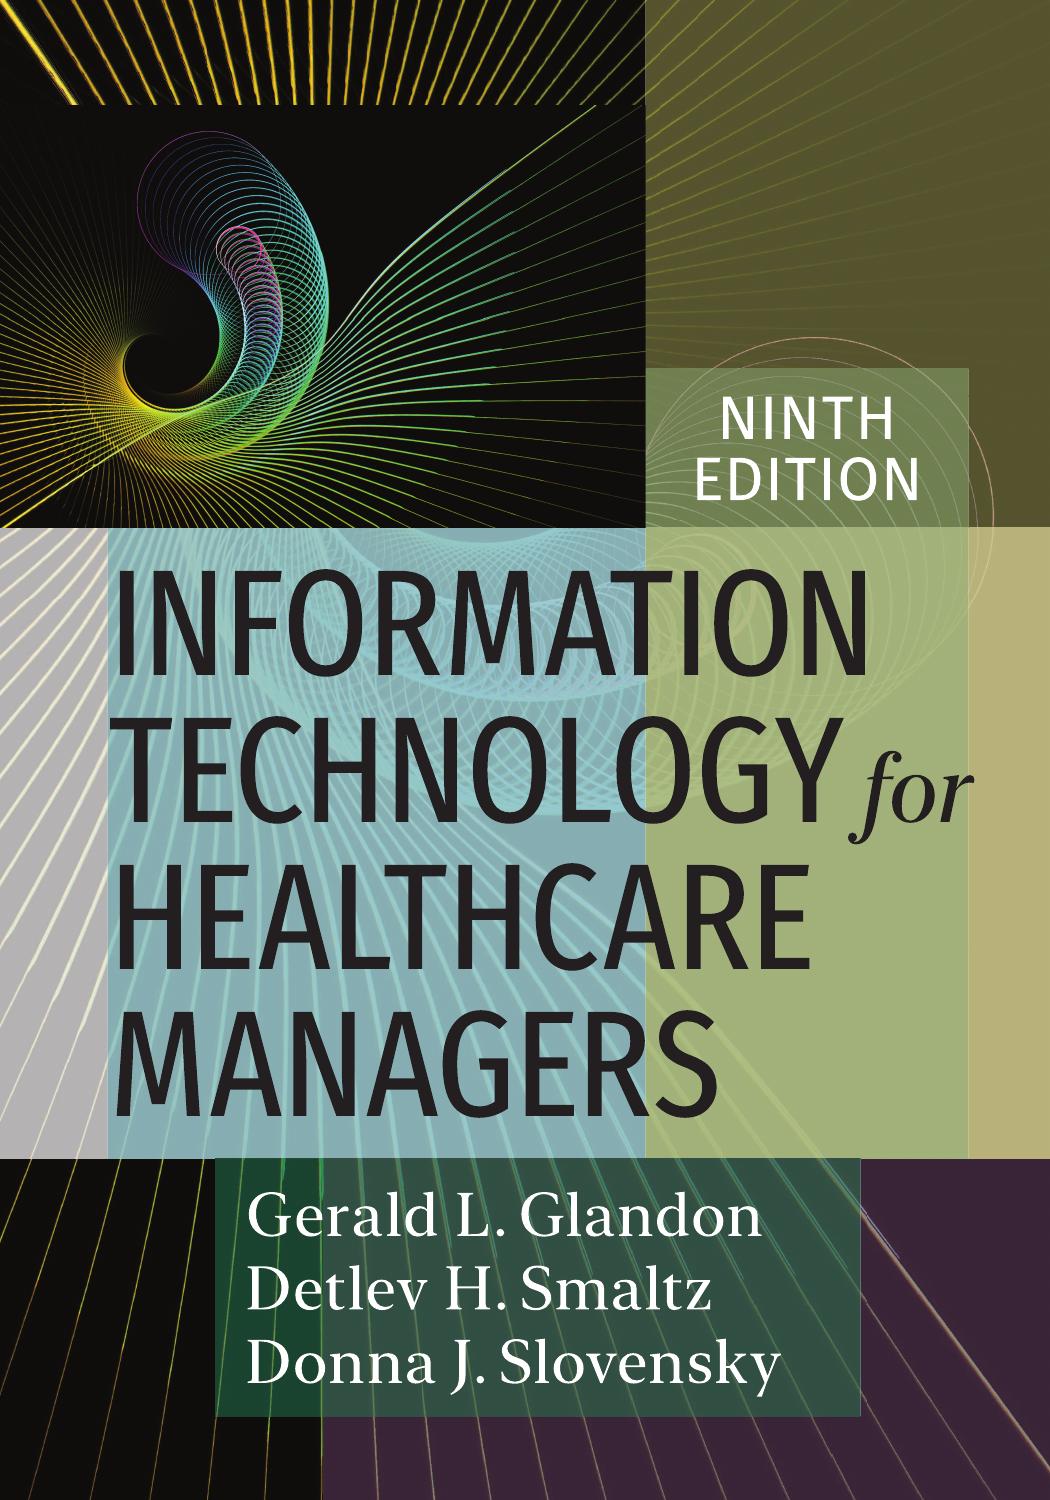 Information Technology for Healthcare Managers, Ninth Edition by Gerald L. Glandon;Donna J. Slovensky;Detlev H. Smaltz;